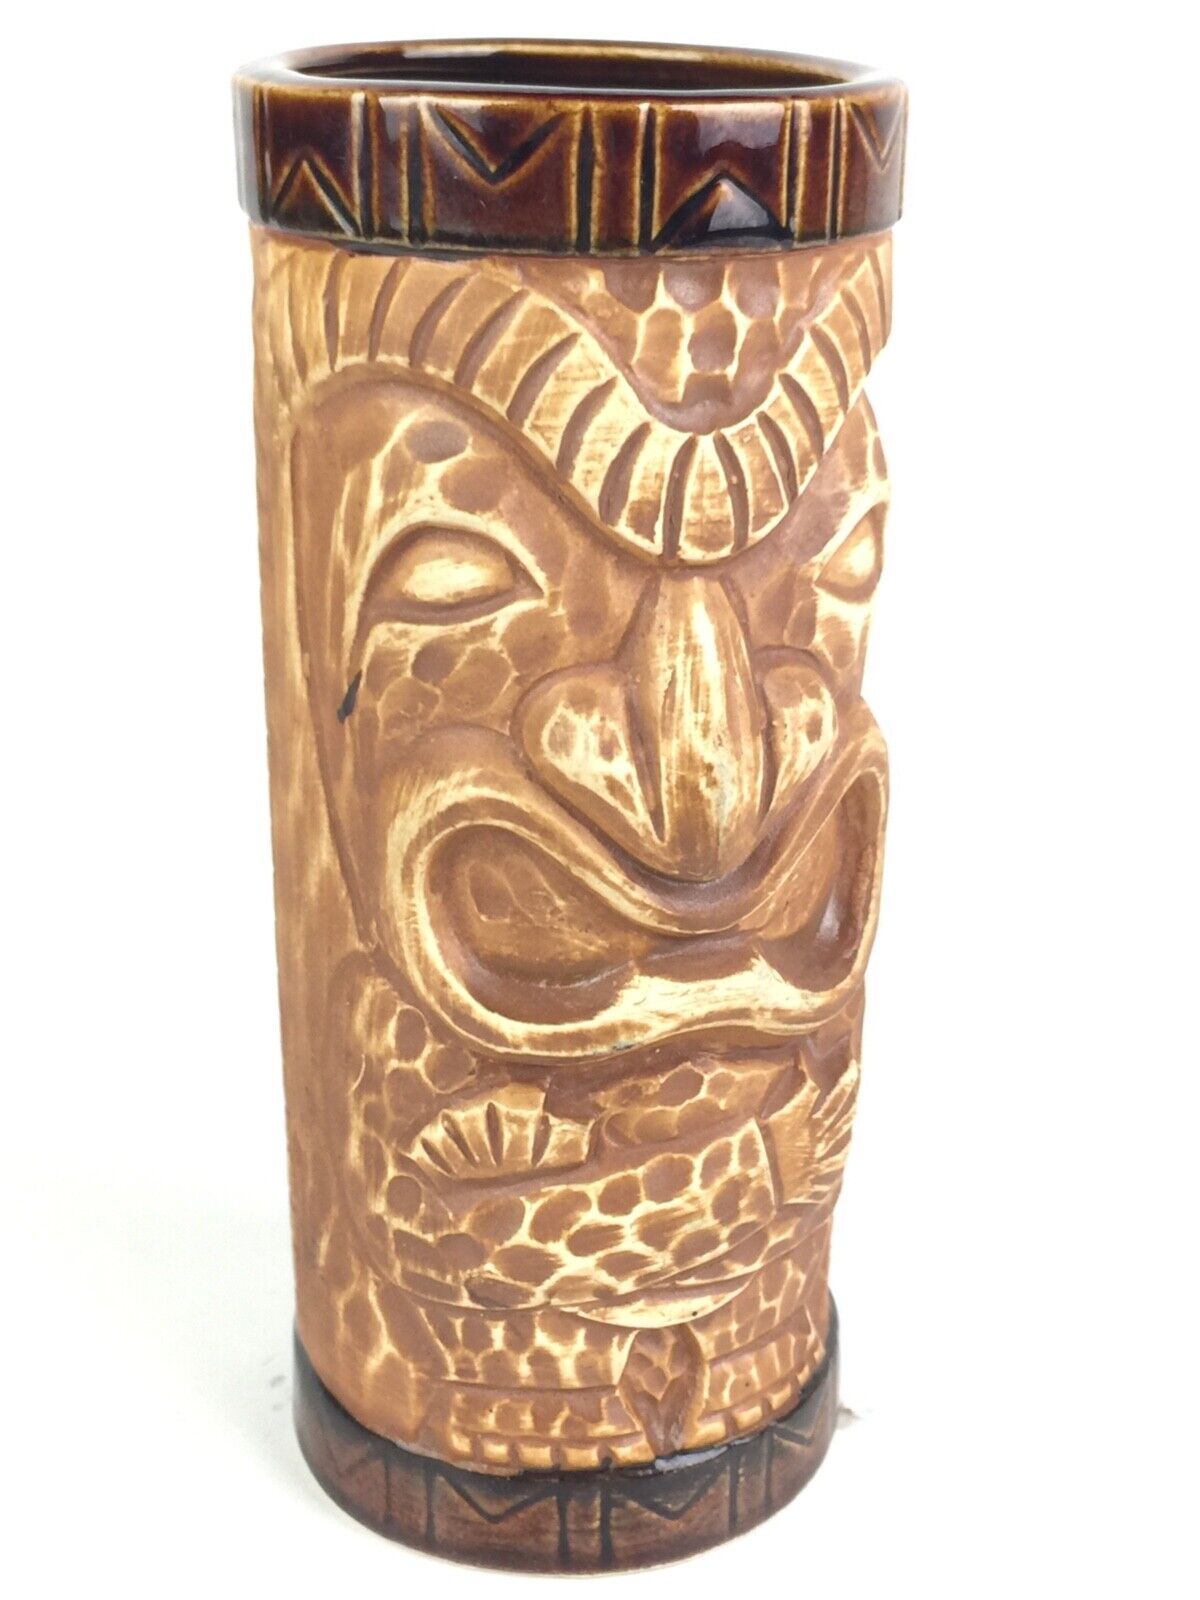 Vintage Otagiri Cross Armed Tiki Mug / Cup - Excellent